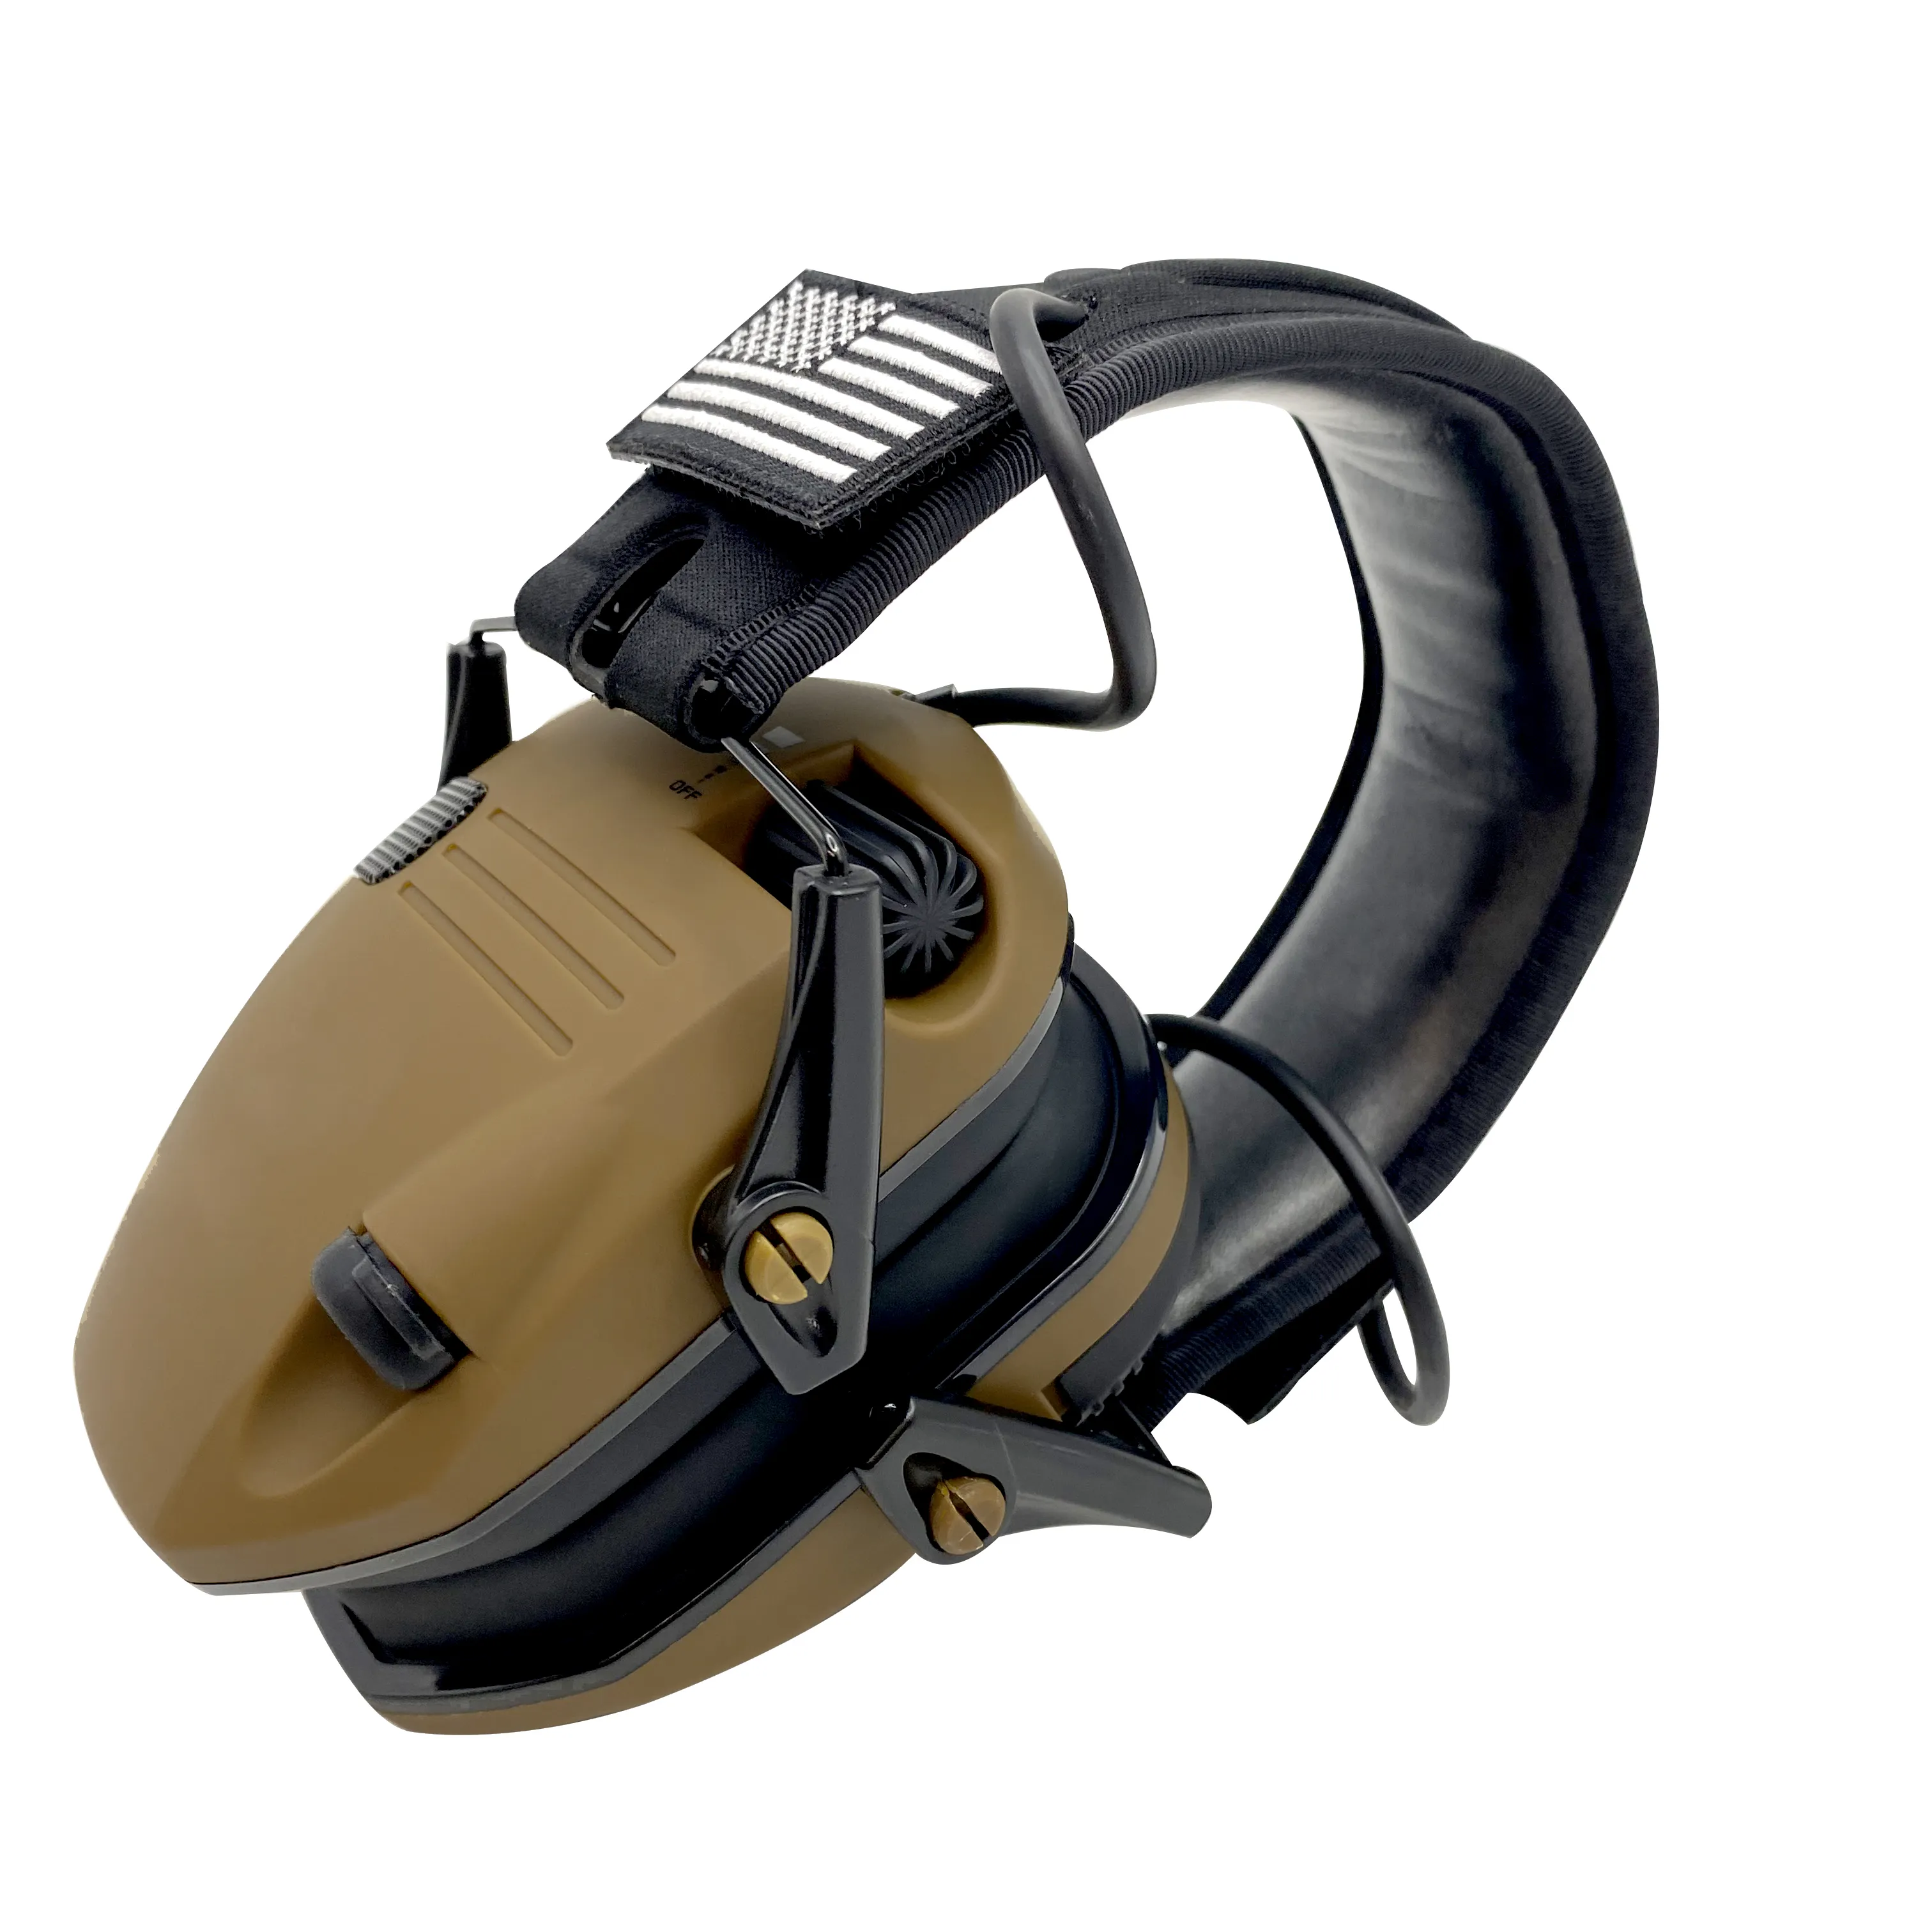 سماعات تكتيكية لإطلاق الرصاص سماعات رأس إلكترونية سماعات لامتصاص الصوت مانعة للضوضاء الأعلى مبيعا